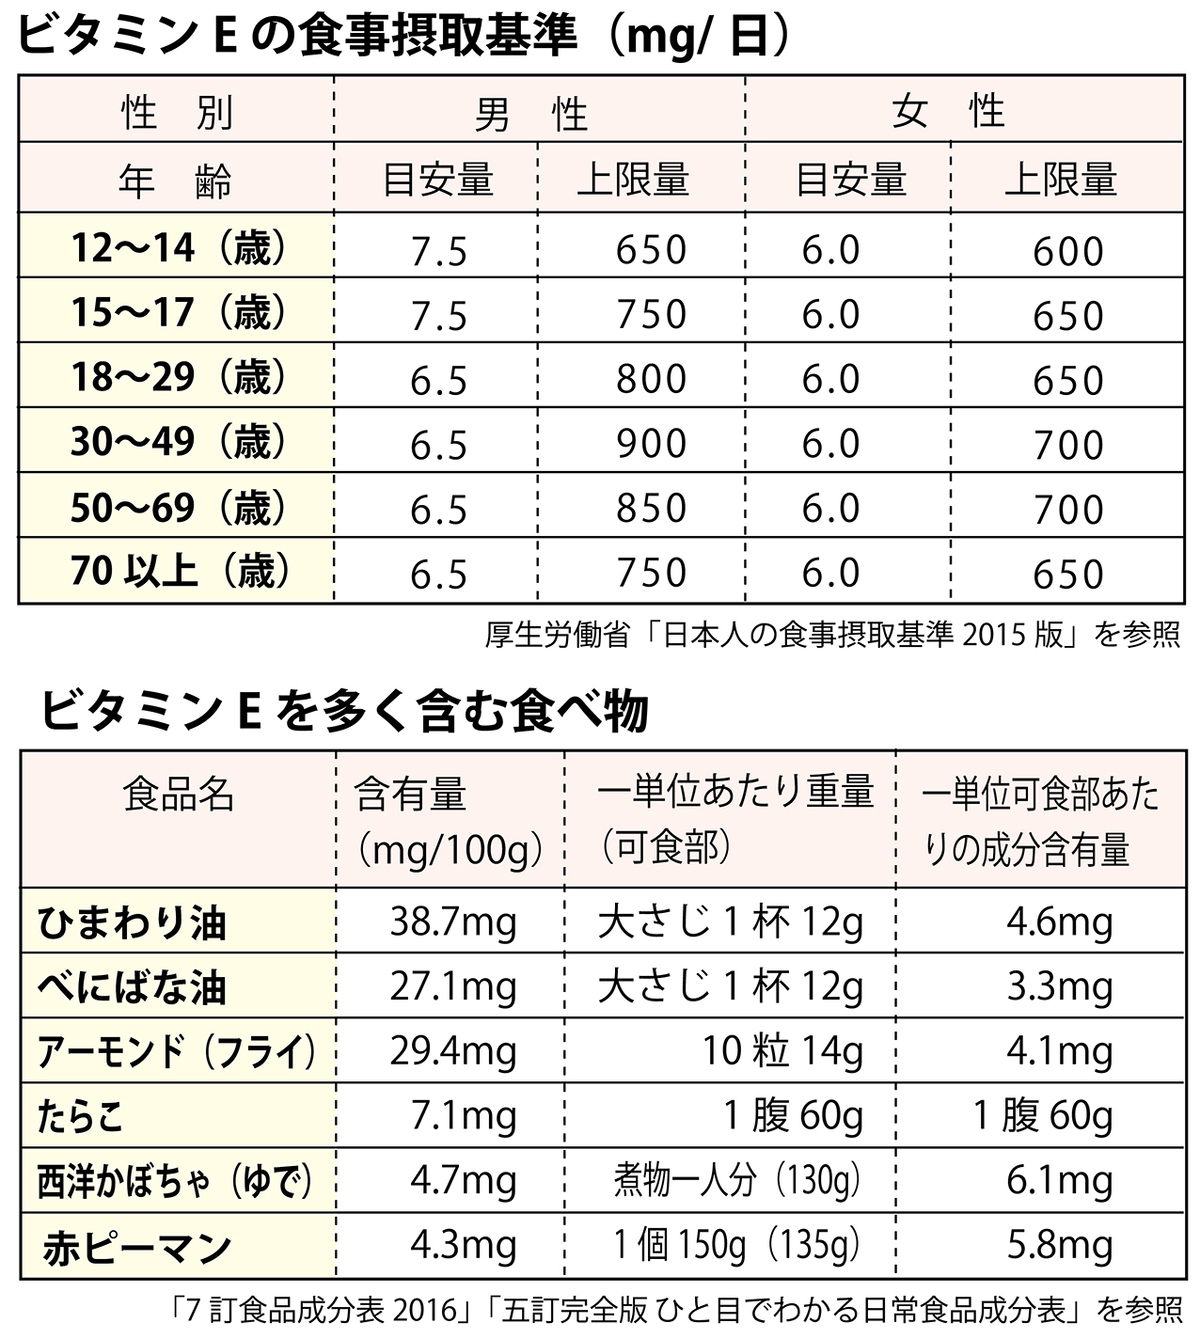 ビタミンEの摂取基準表